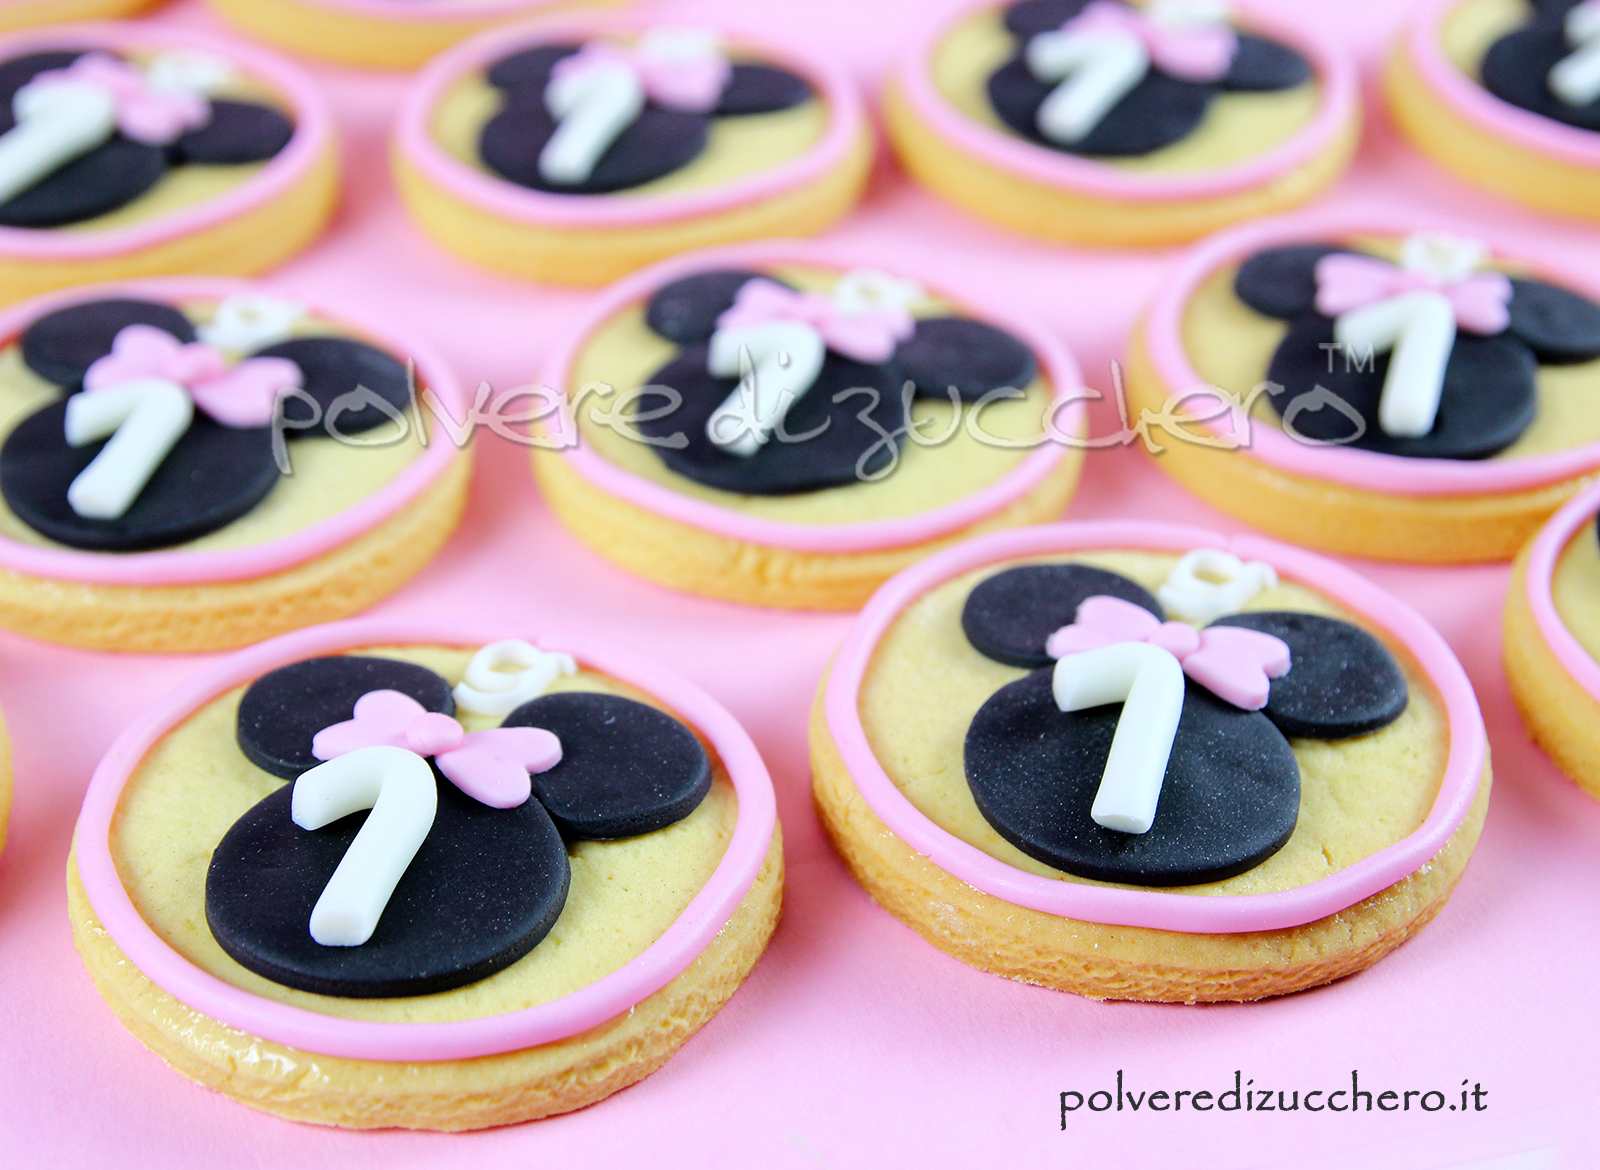 cake design biscotti decorati sugar cookies baby minnie compleanno bimba polvere di zucchero